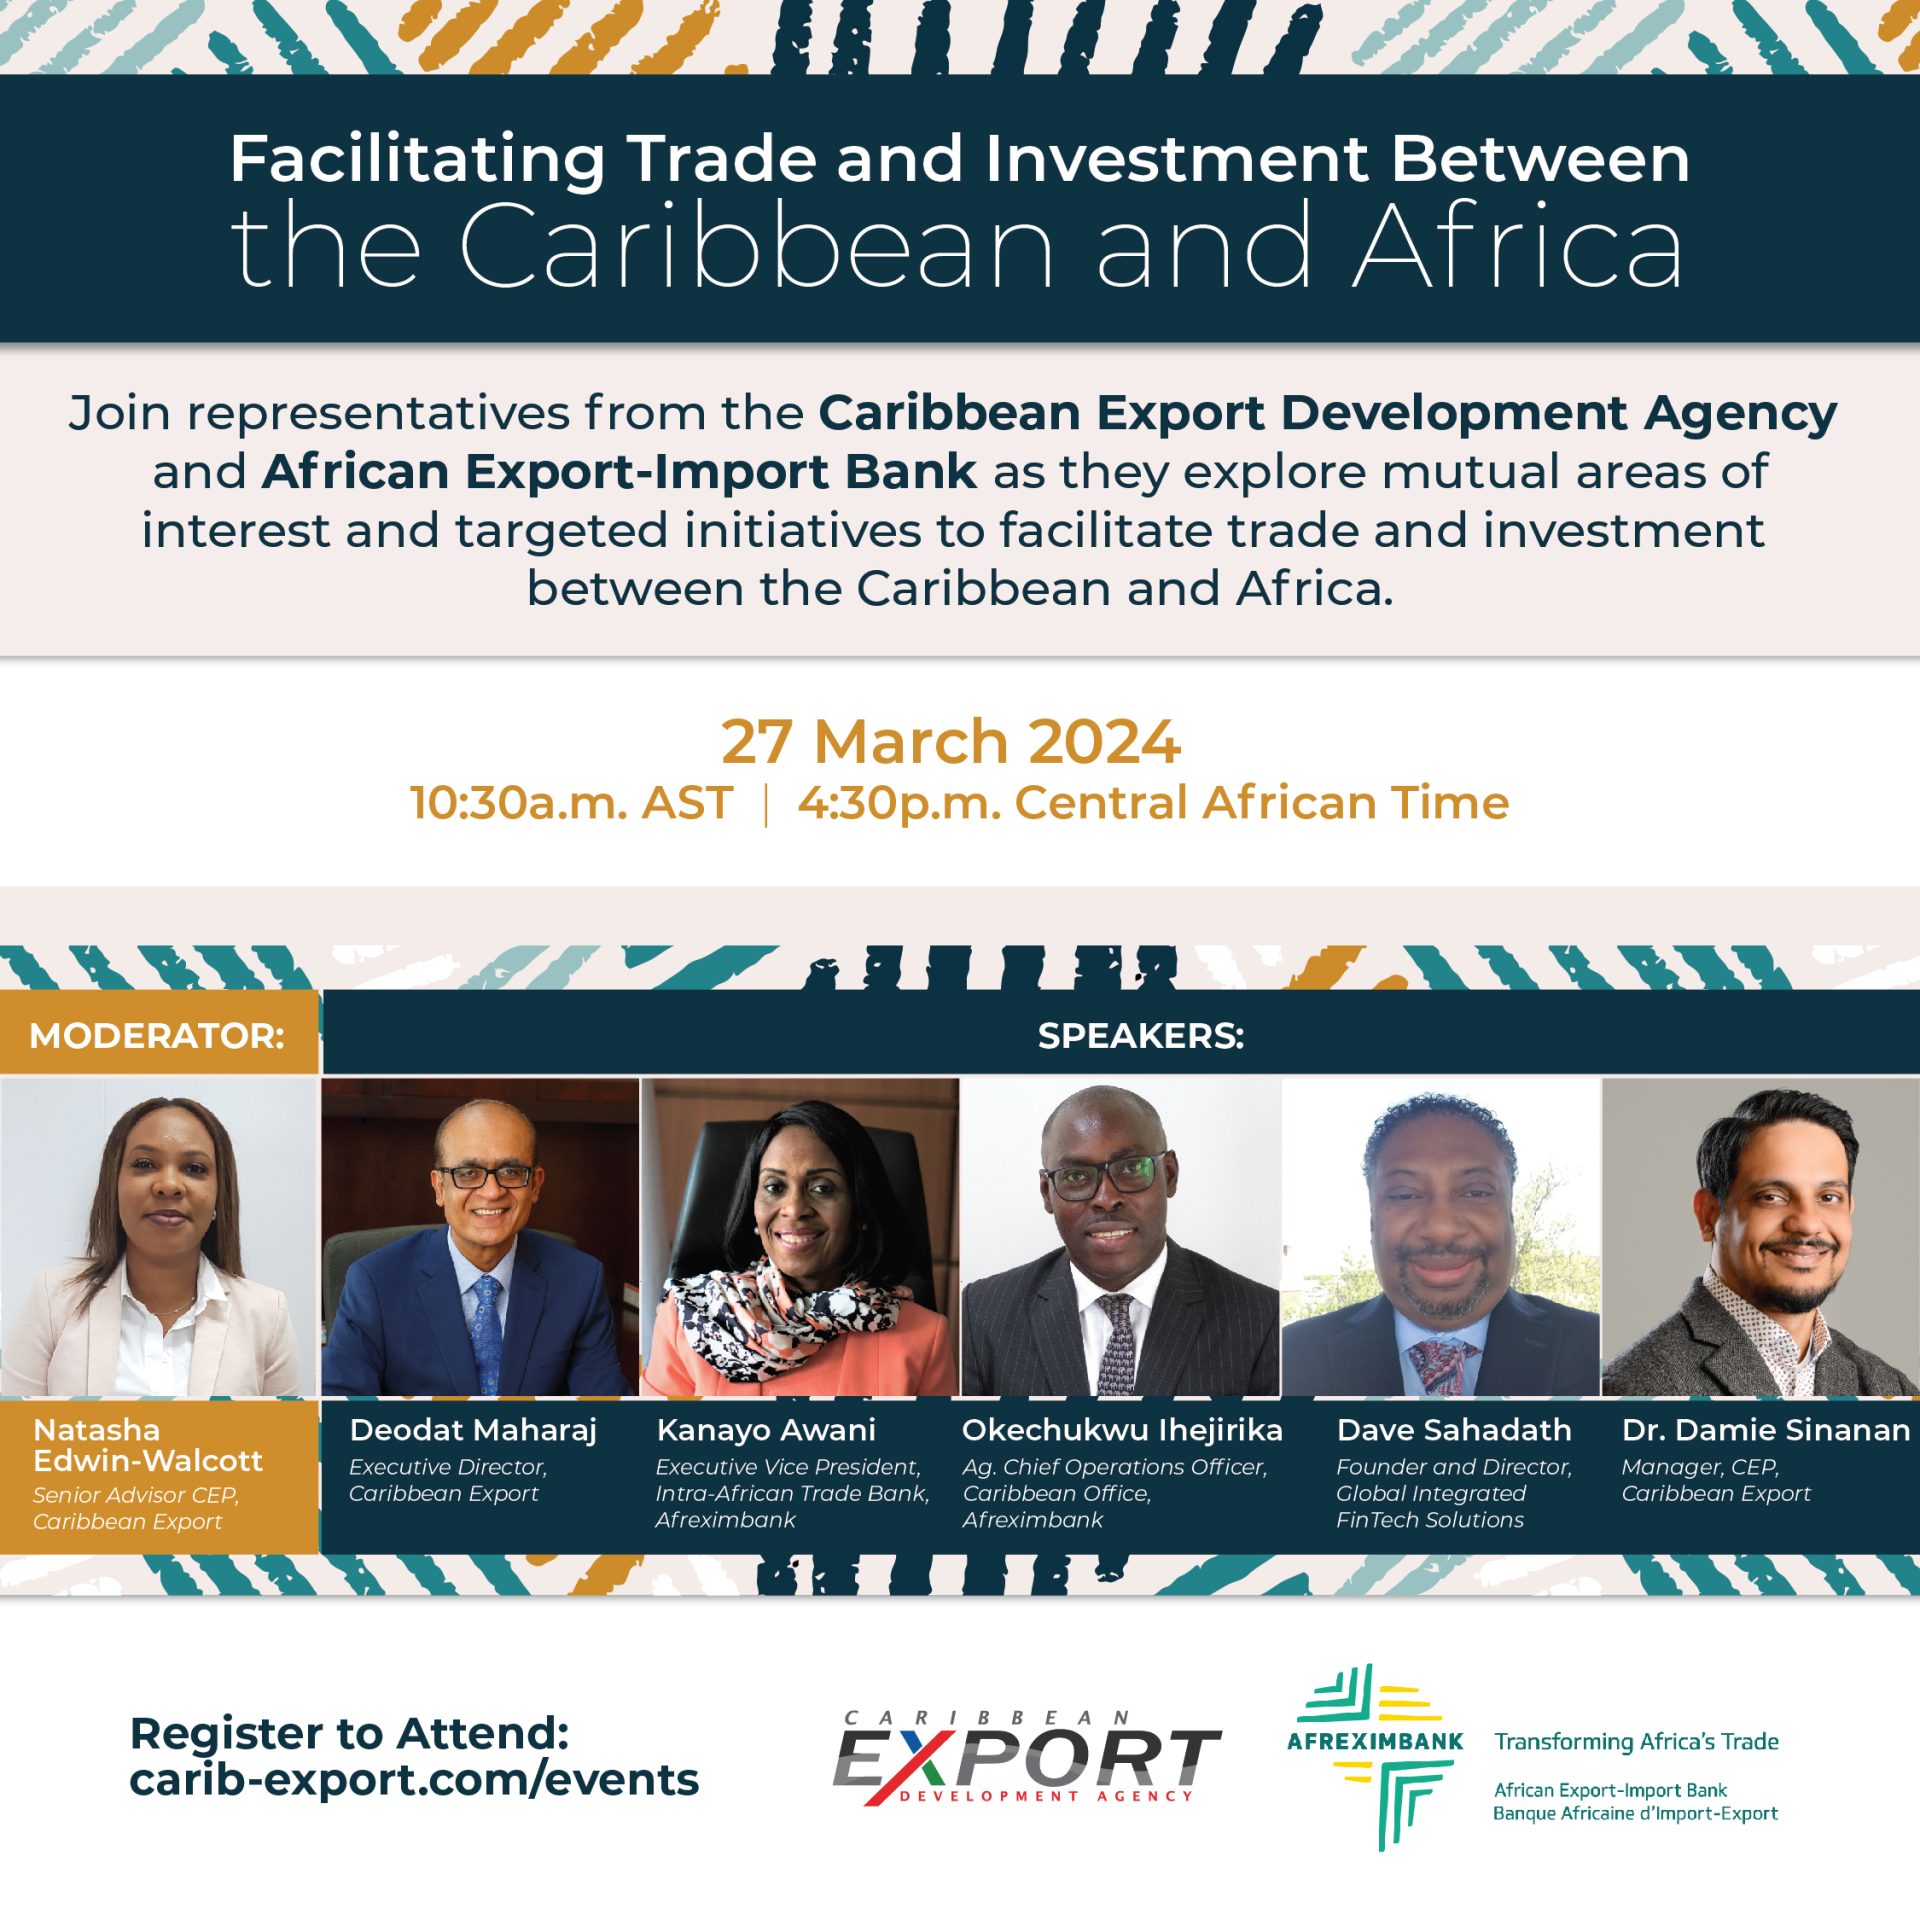 Faciliter le commerce et l’investissement entre les Caraïbes et l’Afrique